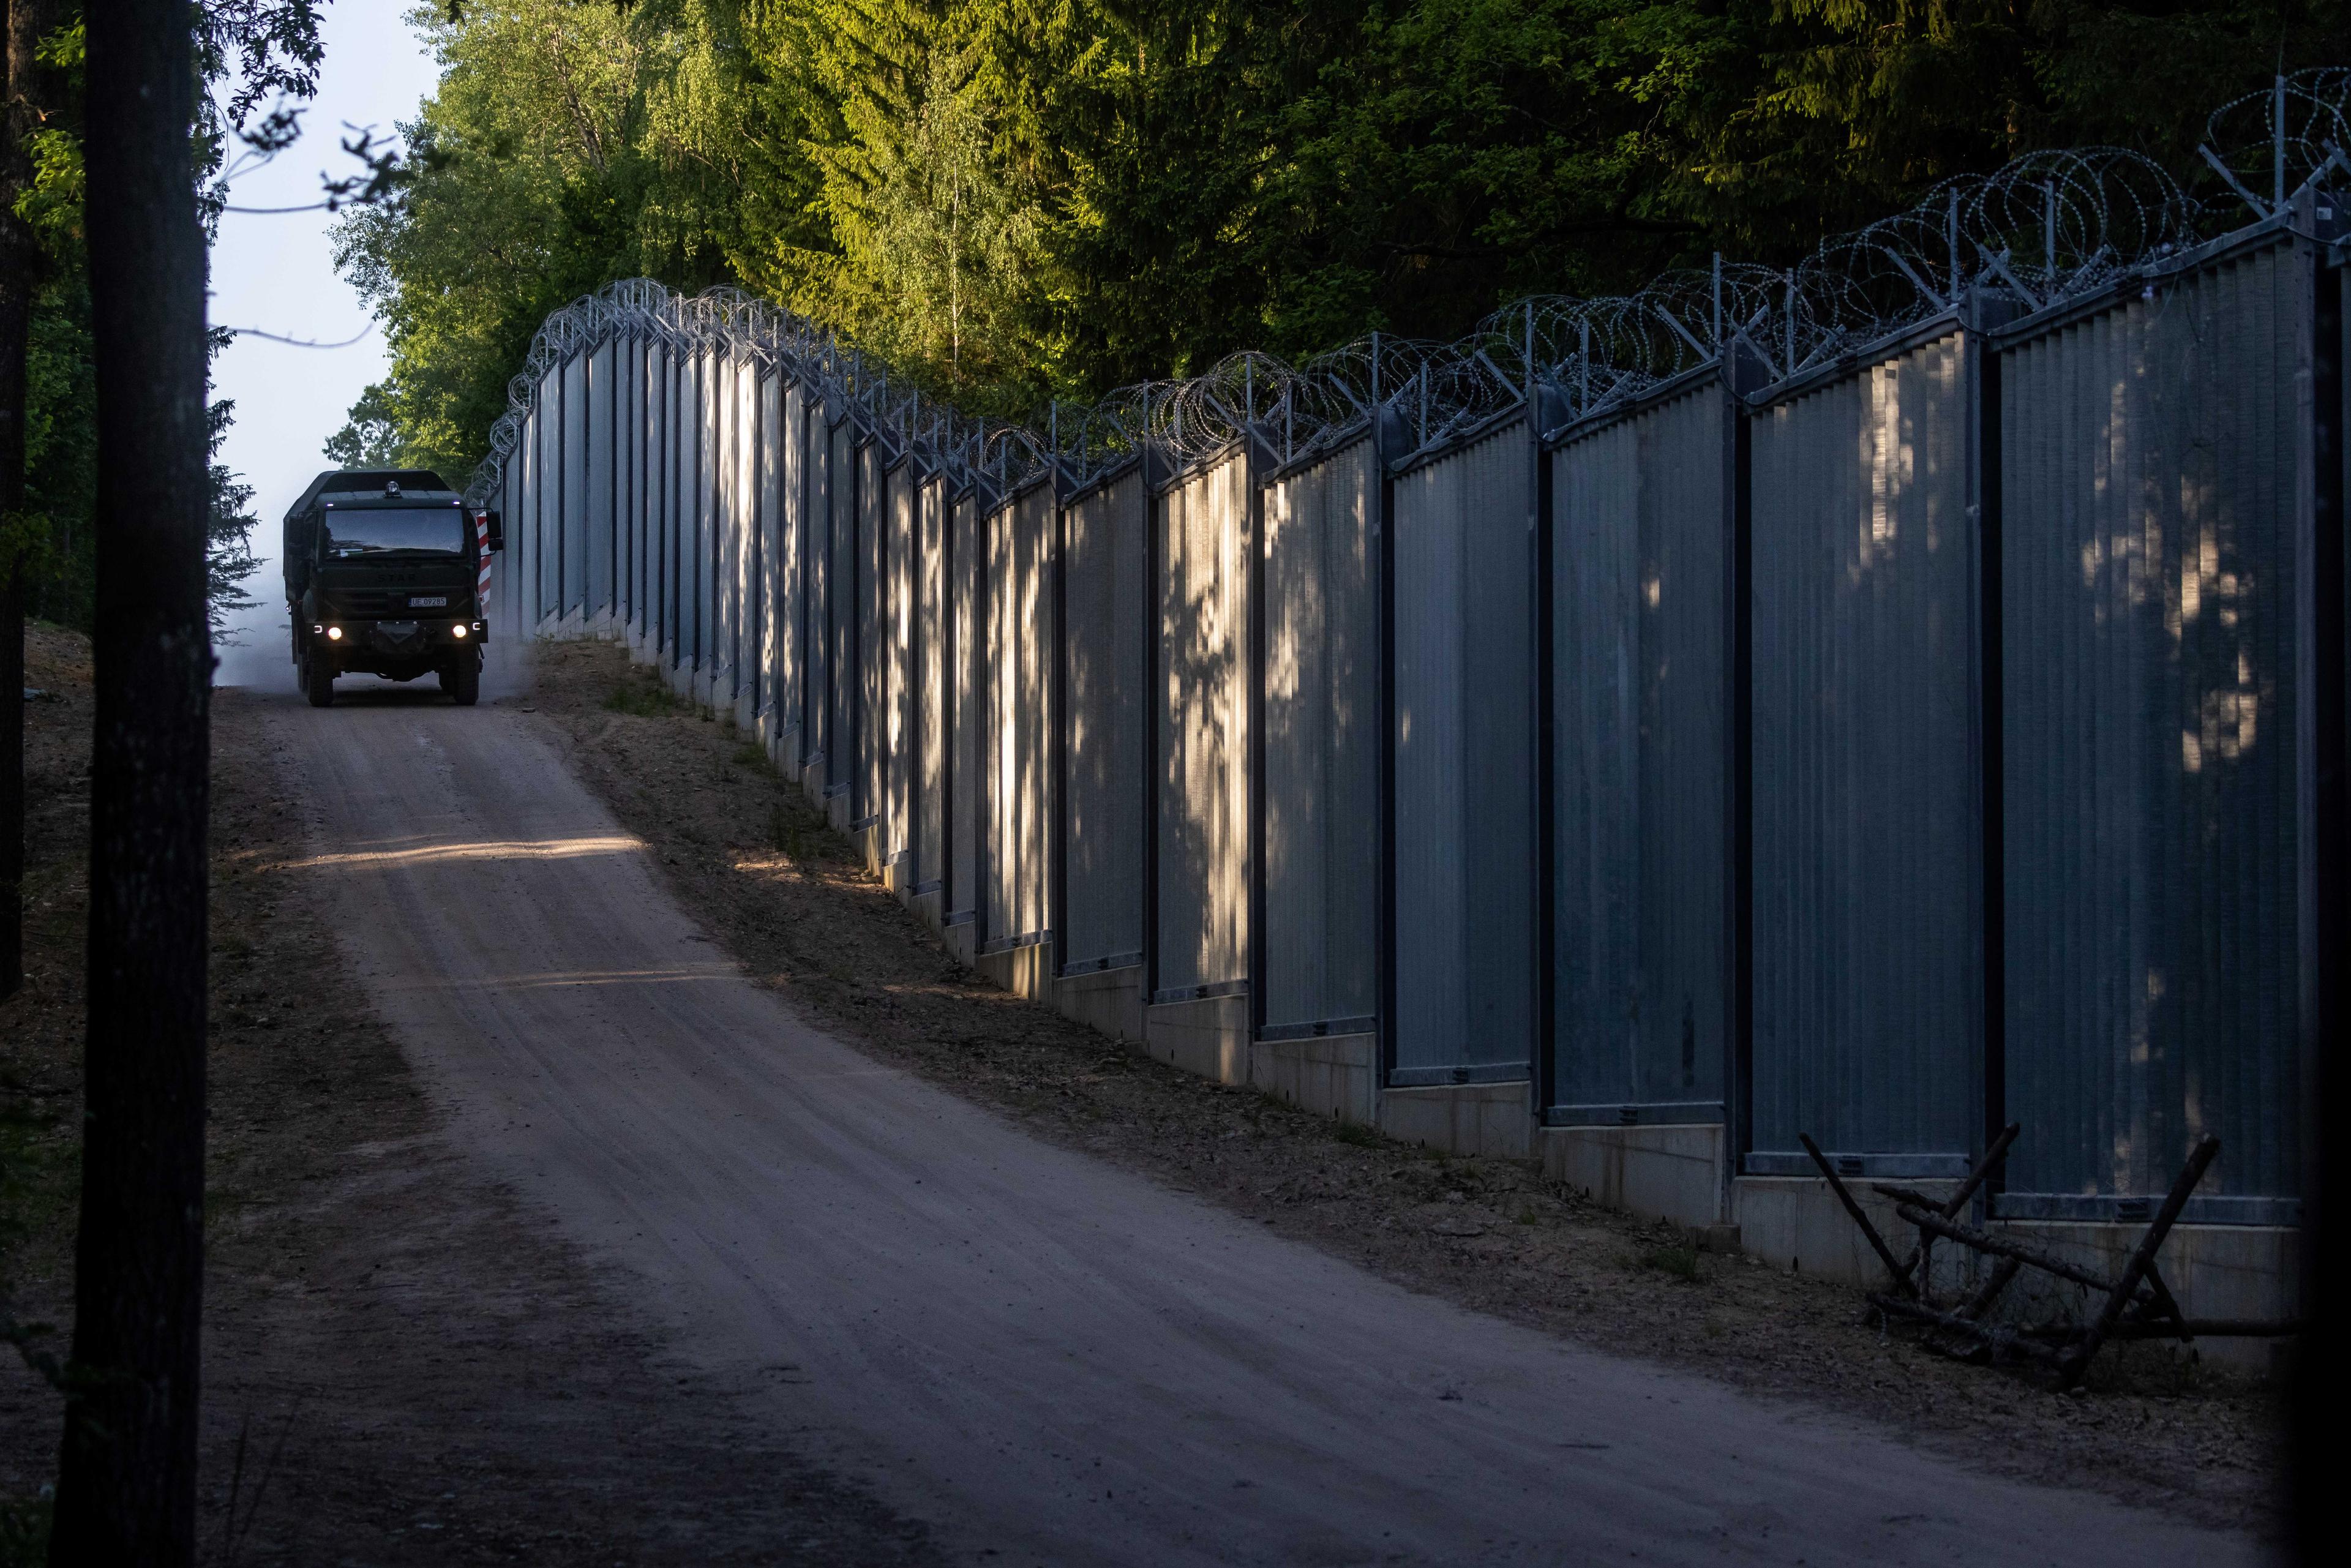 Straż graniczna w ciężarówce patroluje mur graniczny na granicy polsko-białoruskiej